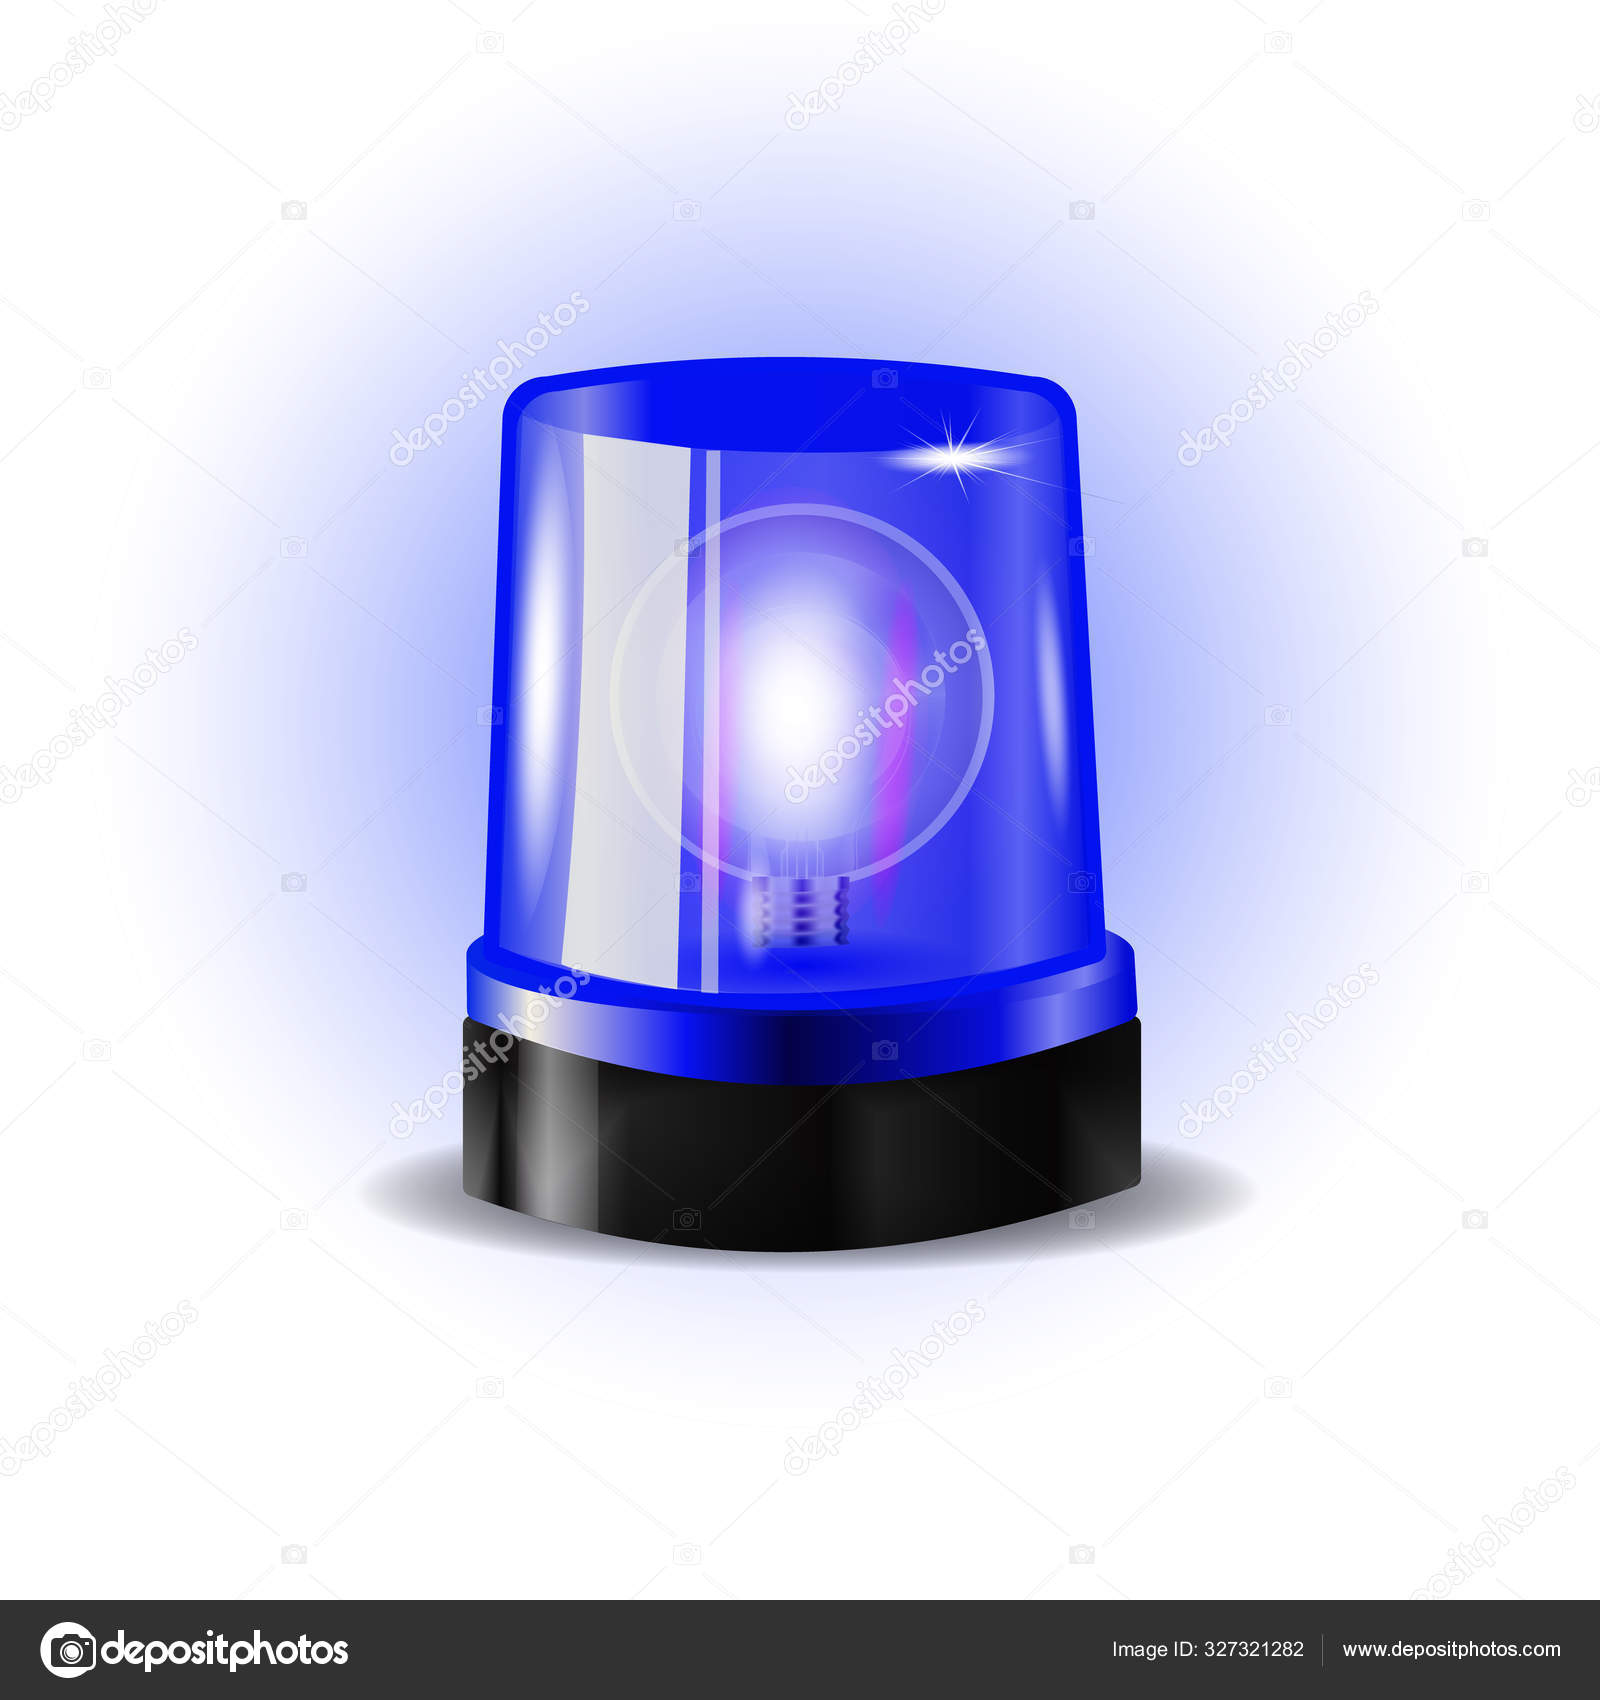 Blaulicht Sirene Vektor. Realistisches Objekt. Lichteffekt. Leuchtfeuer für  Polizeiautos Krankenwagen, Feuerwehrfahrzeuge. Notruf-Sirene.  Stock-Vektorgrafik von ©kabzon300@gmail.com 327321282